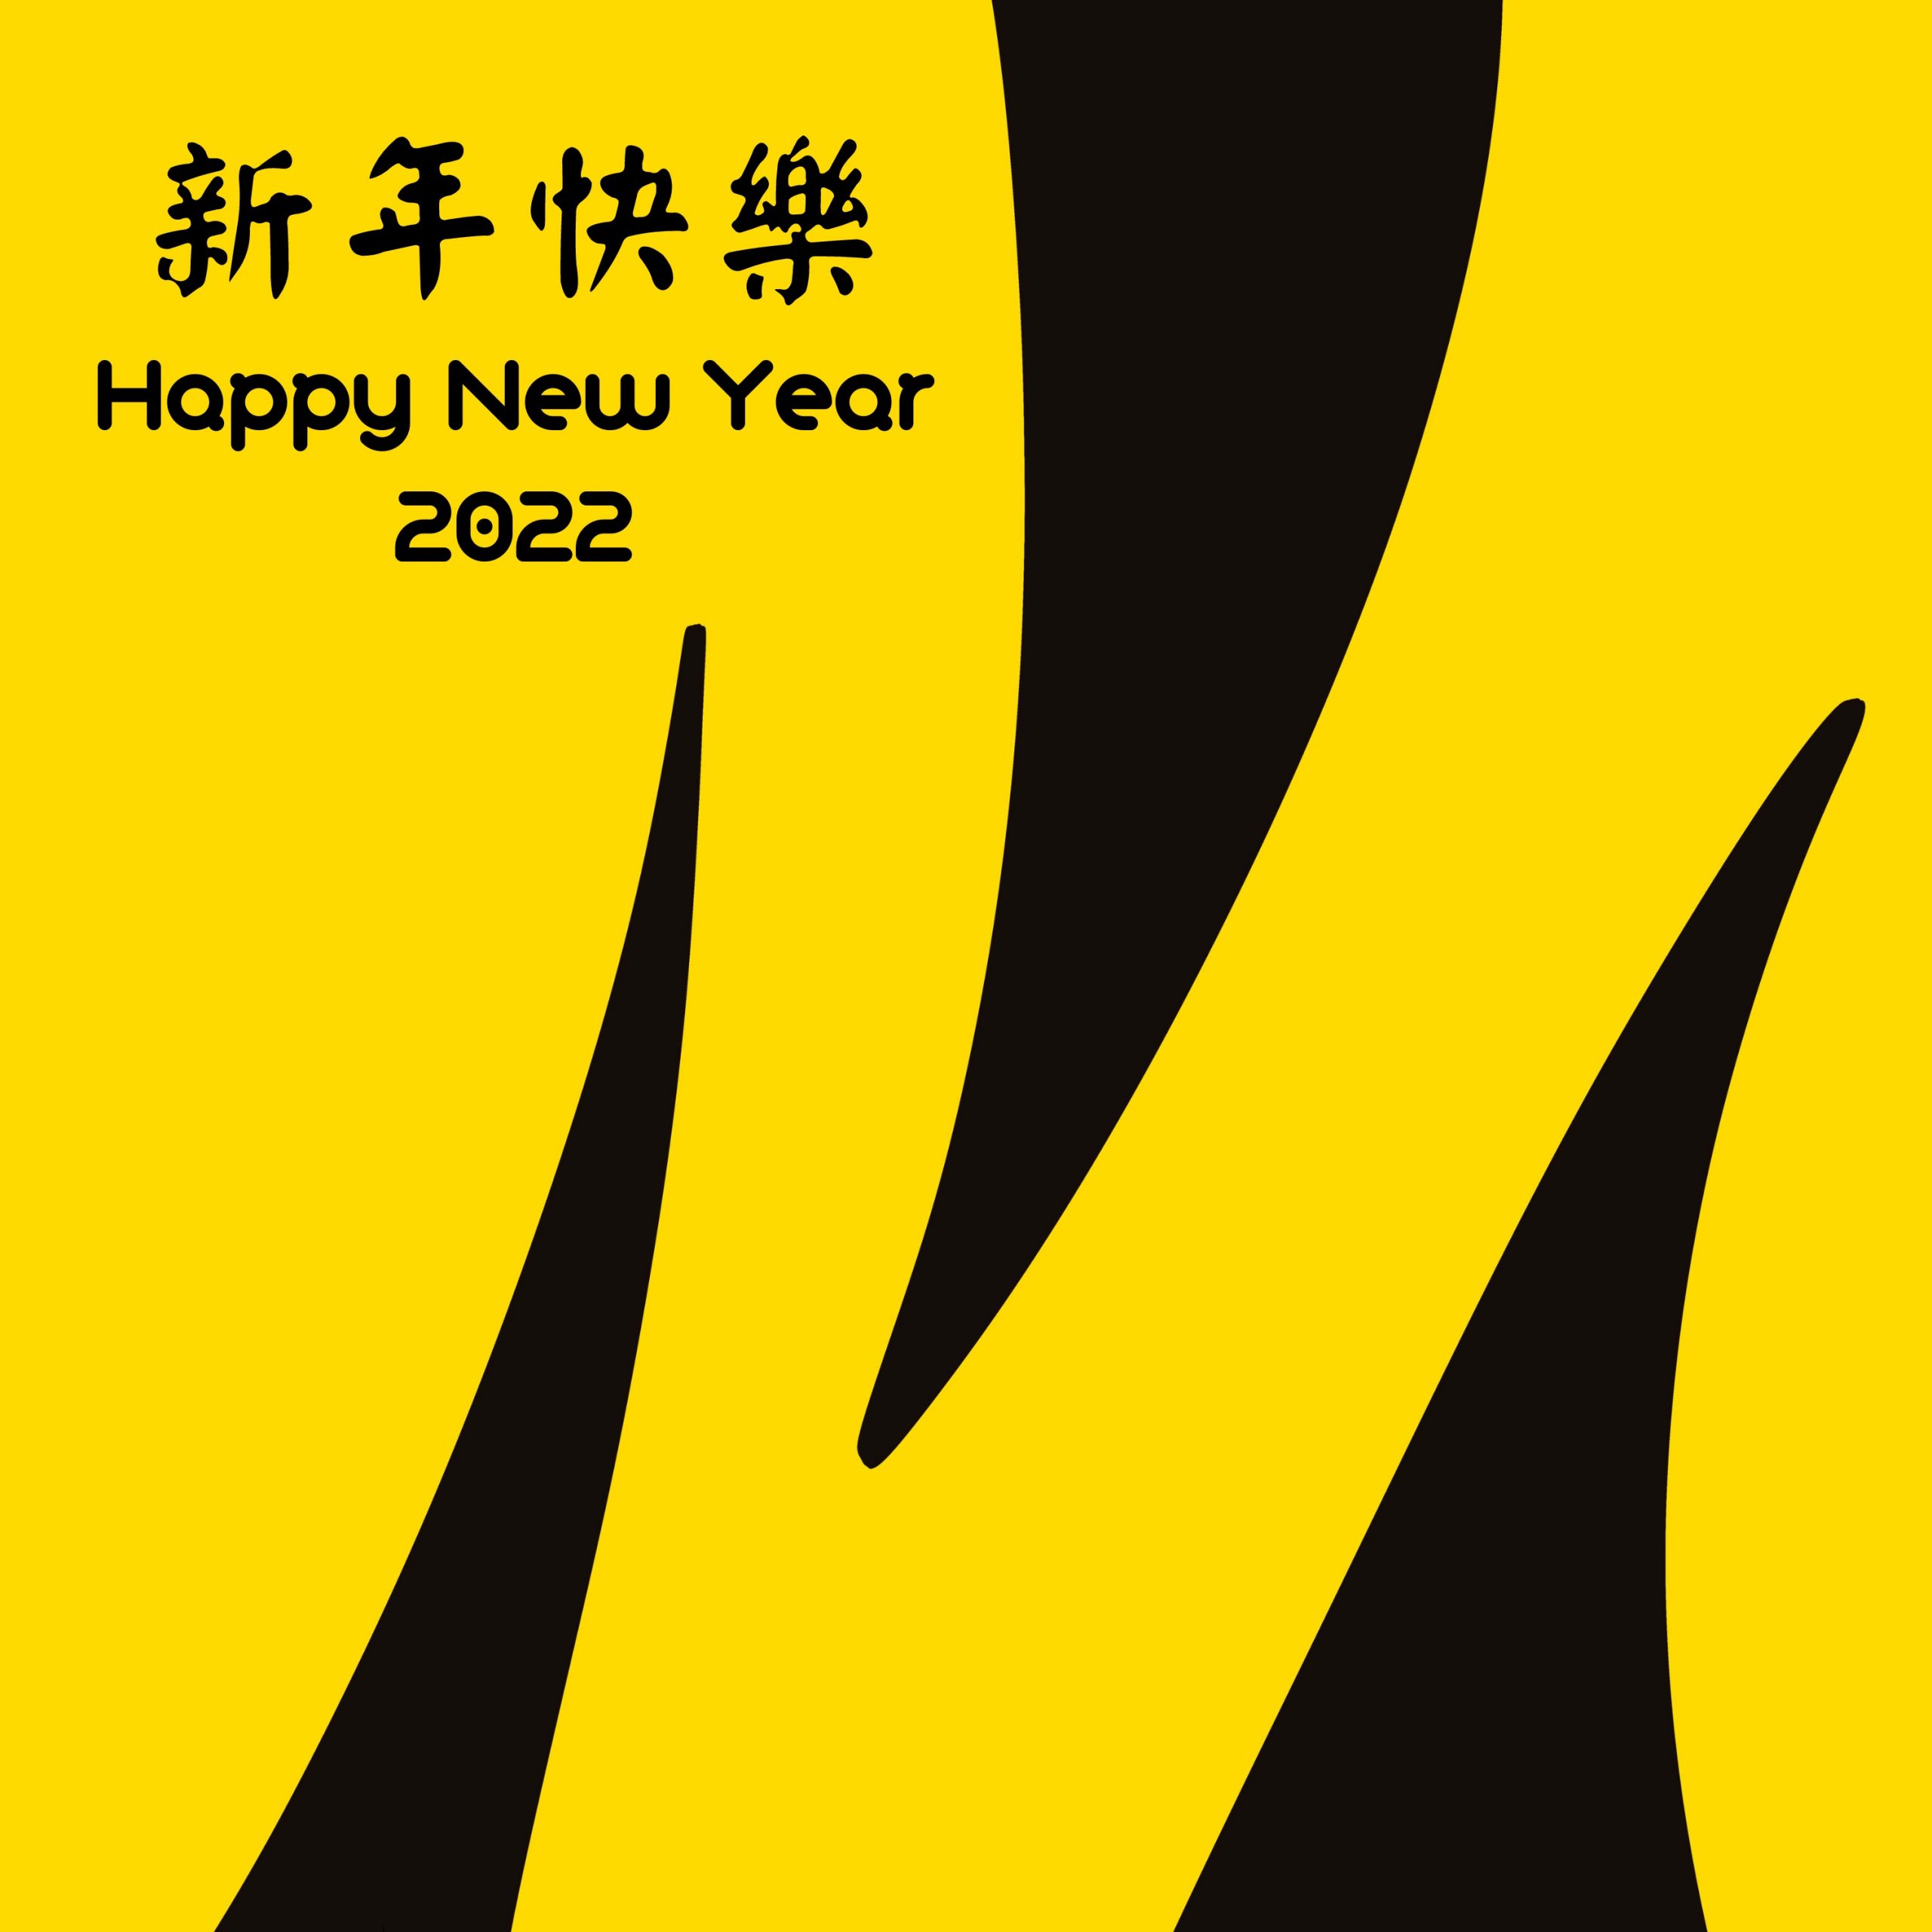 民國111年新年快樂（Happy New Year 2022）設計賀卡